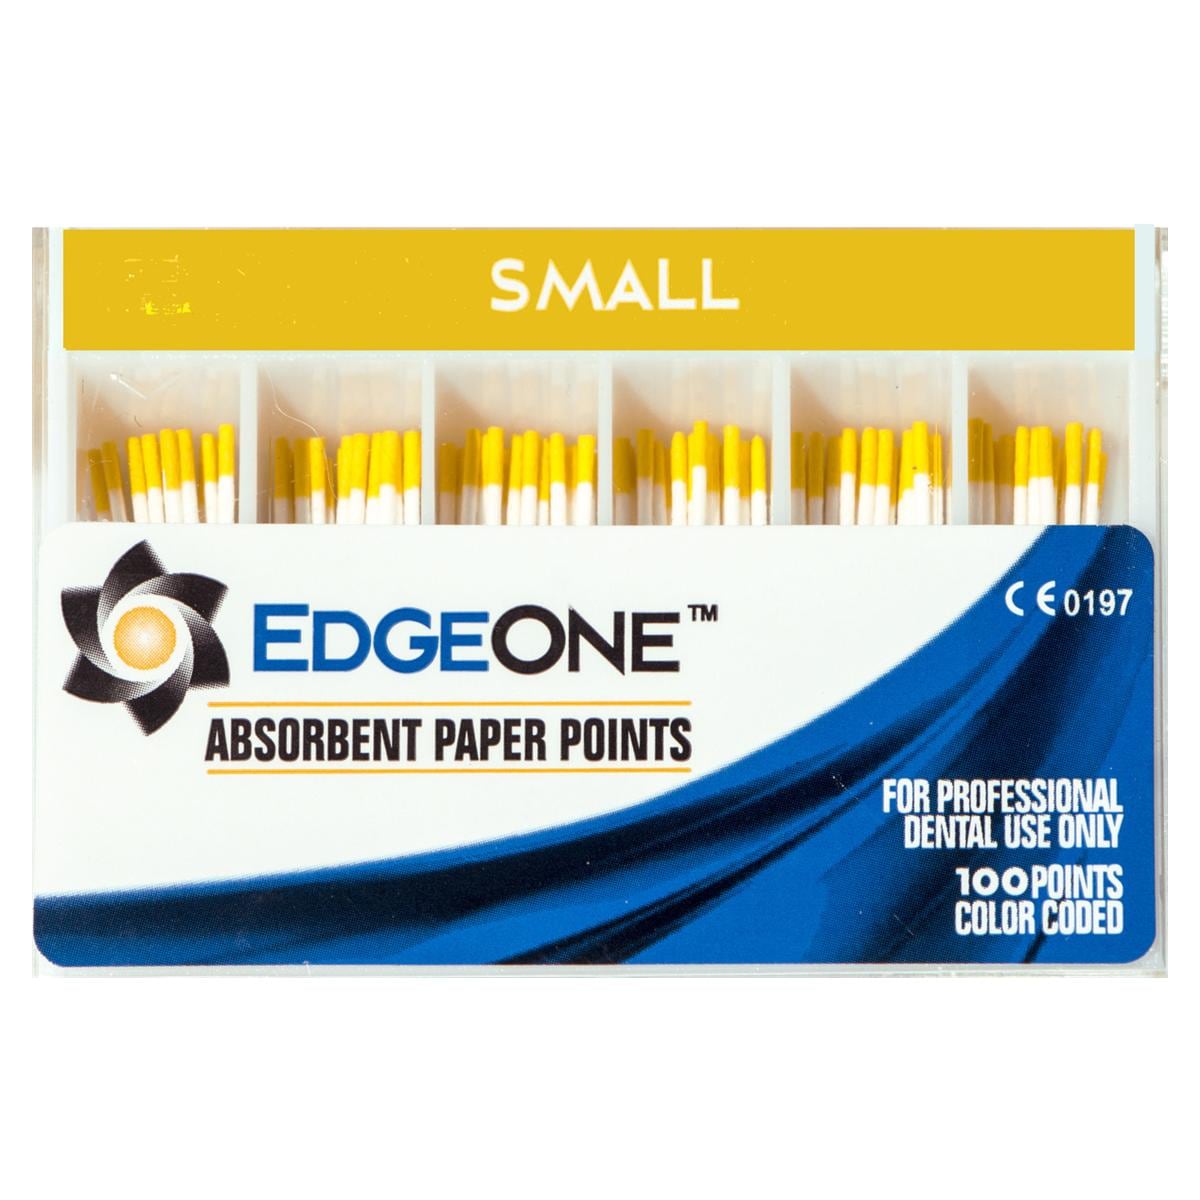 Pointes en papier absorbant EdgeOne - Small (jaune), 100 pcs